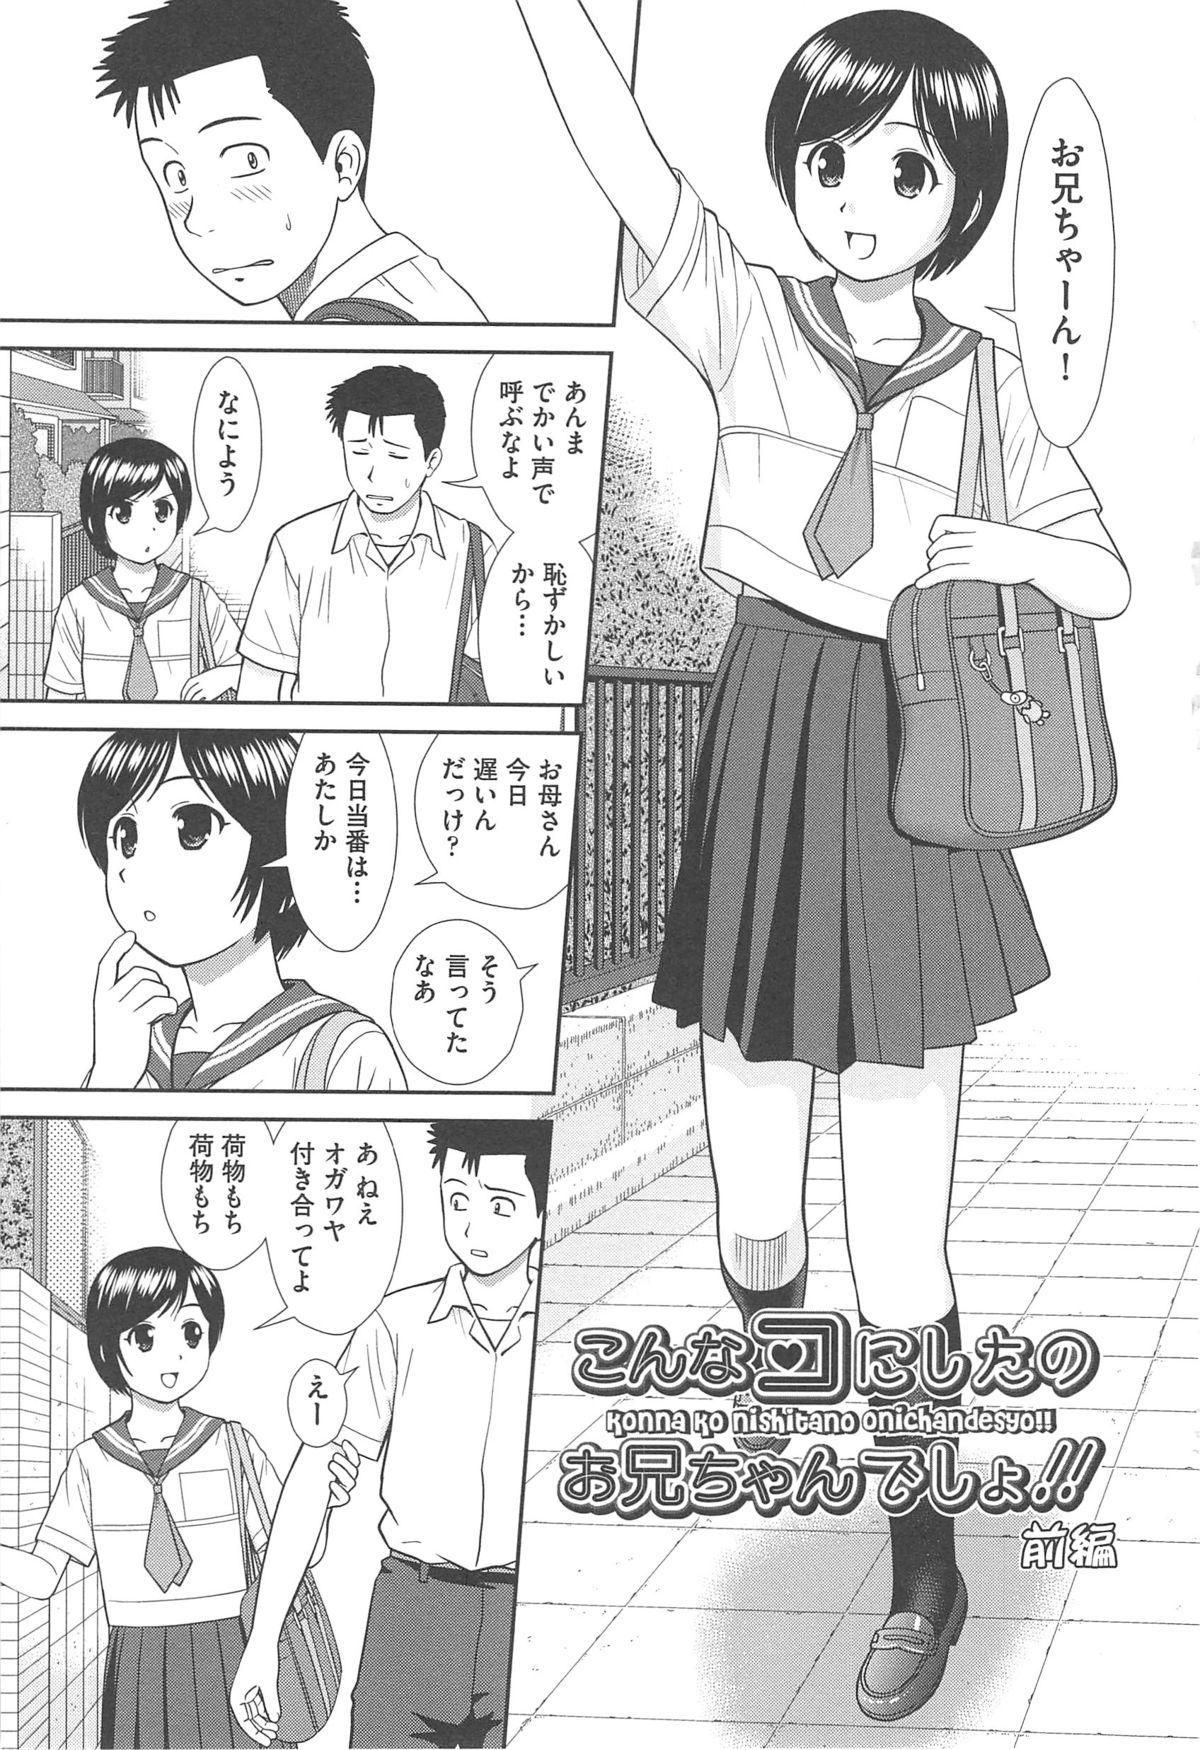 Kink Konna Ko ni Shita no Oniichan desho!! Ffm - Page 9